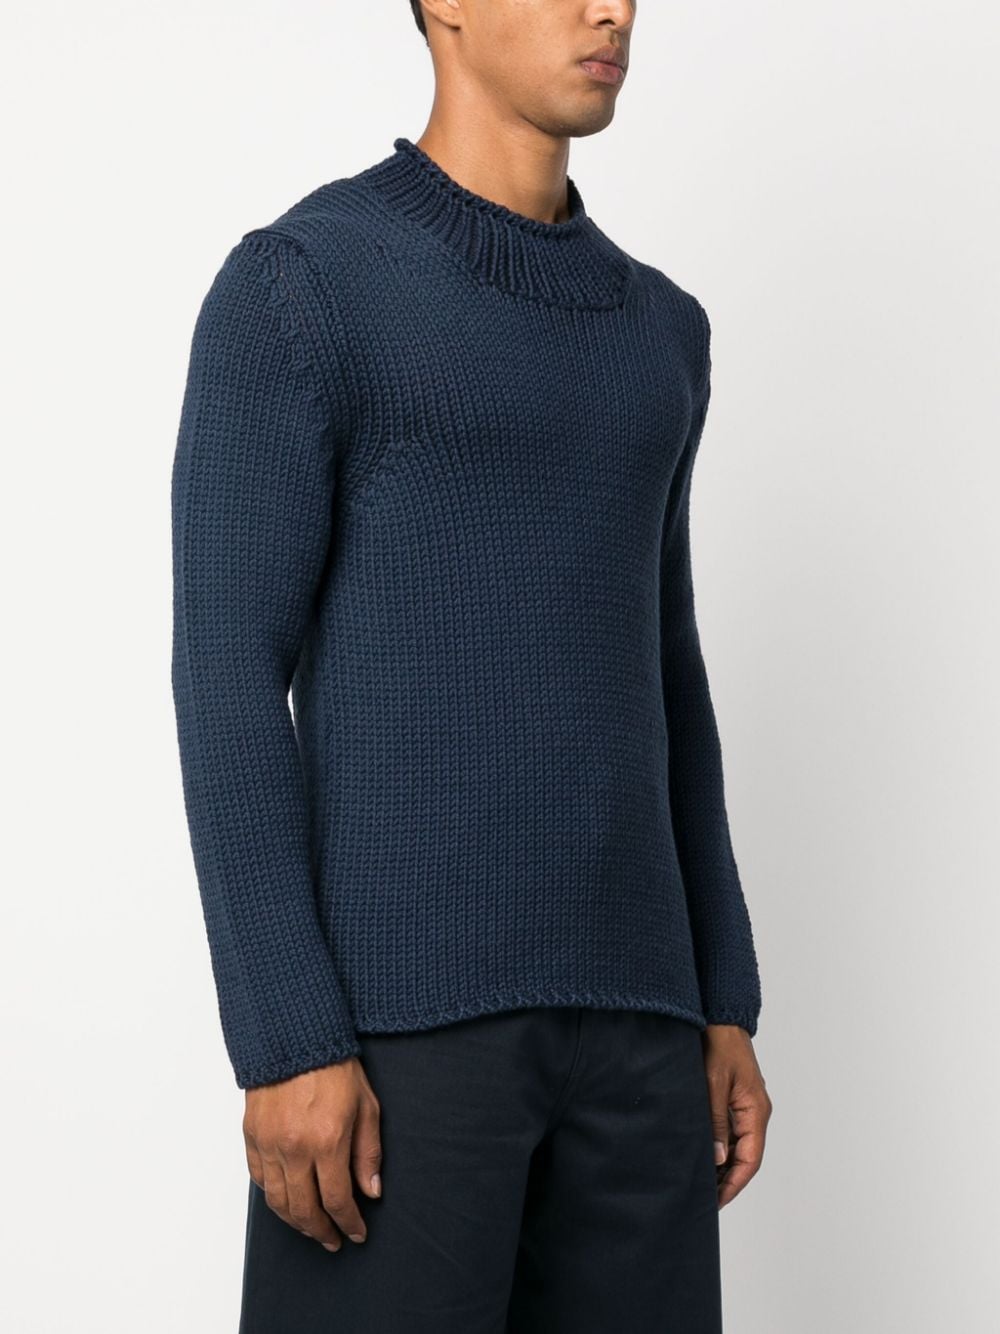 Shop Fabrizio Del Carlo Wool Round Neck Sweater